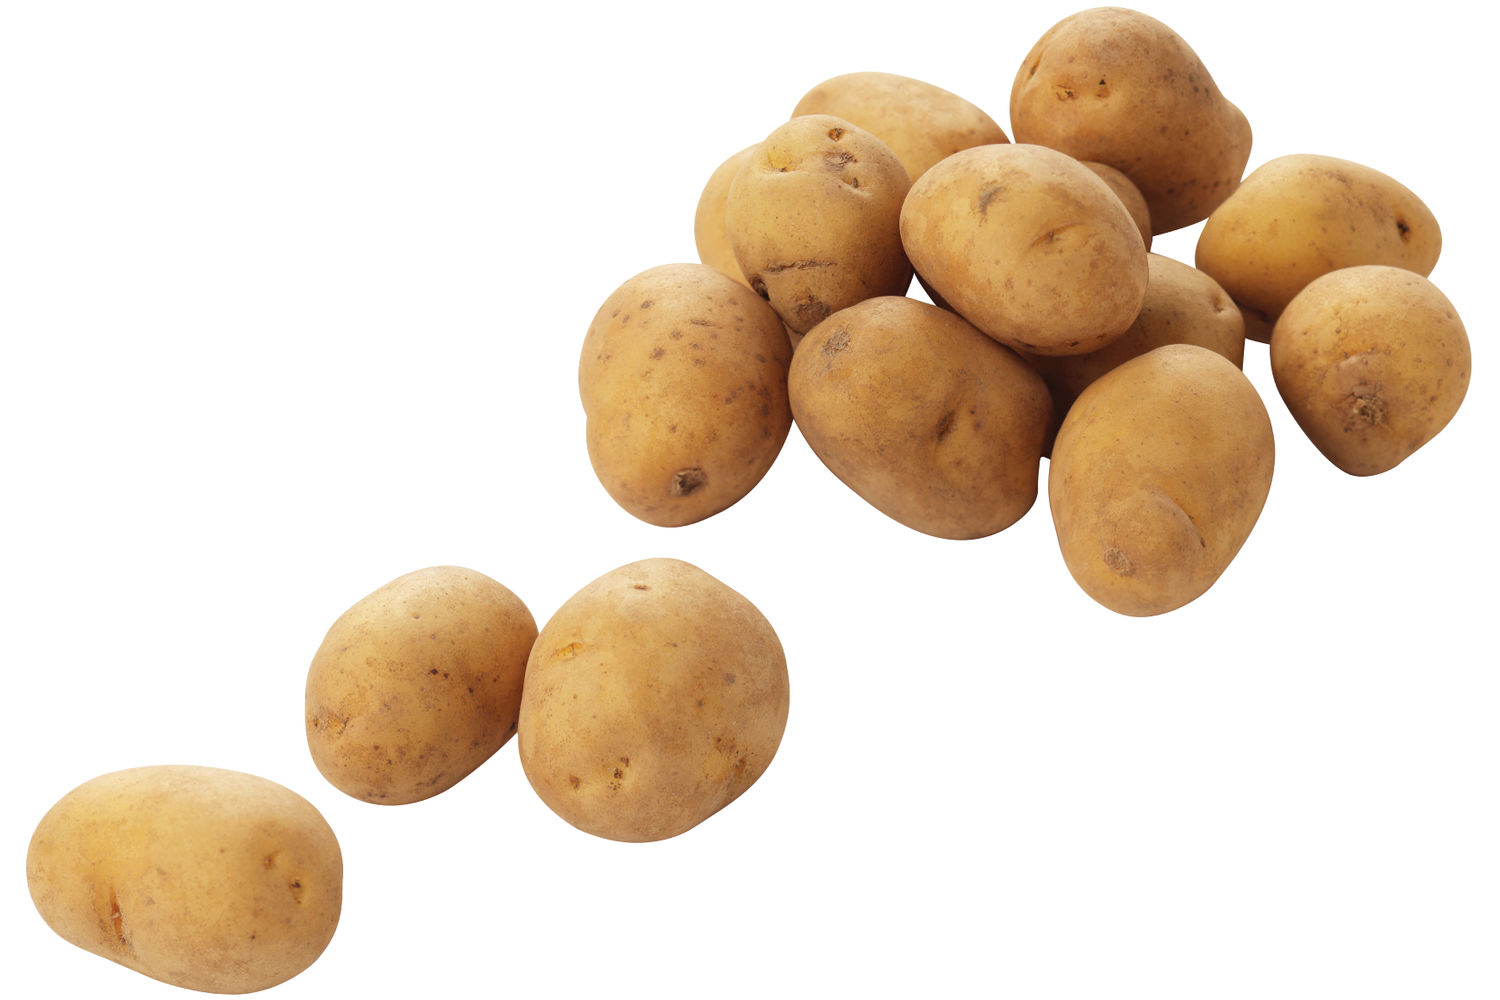 Kriel aardappelen verpakt 1kg kist 10 stuks 1